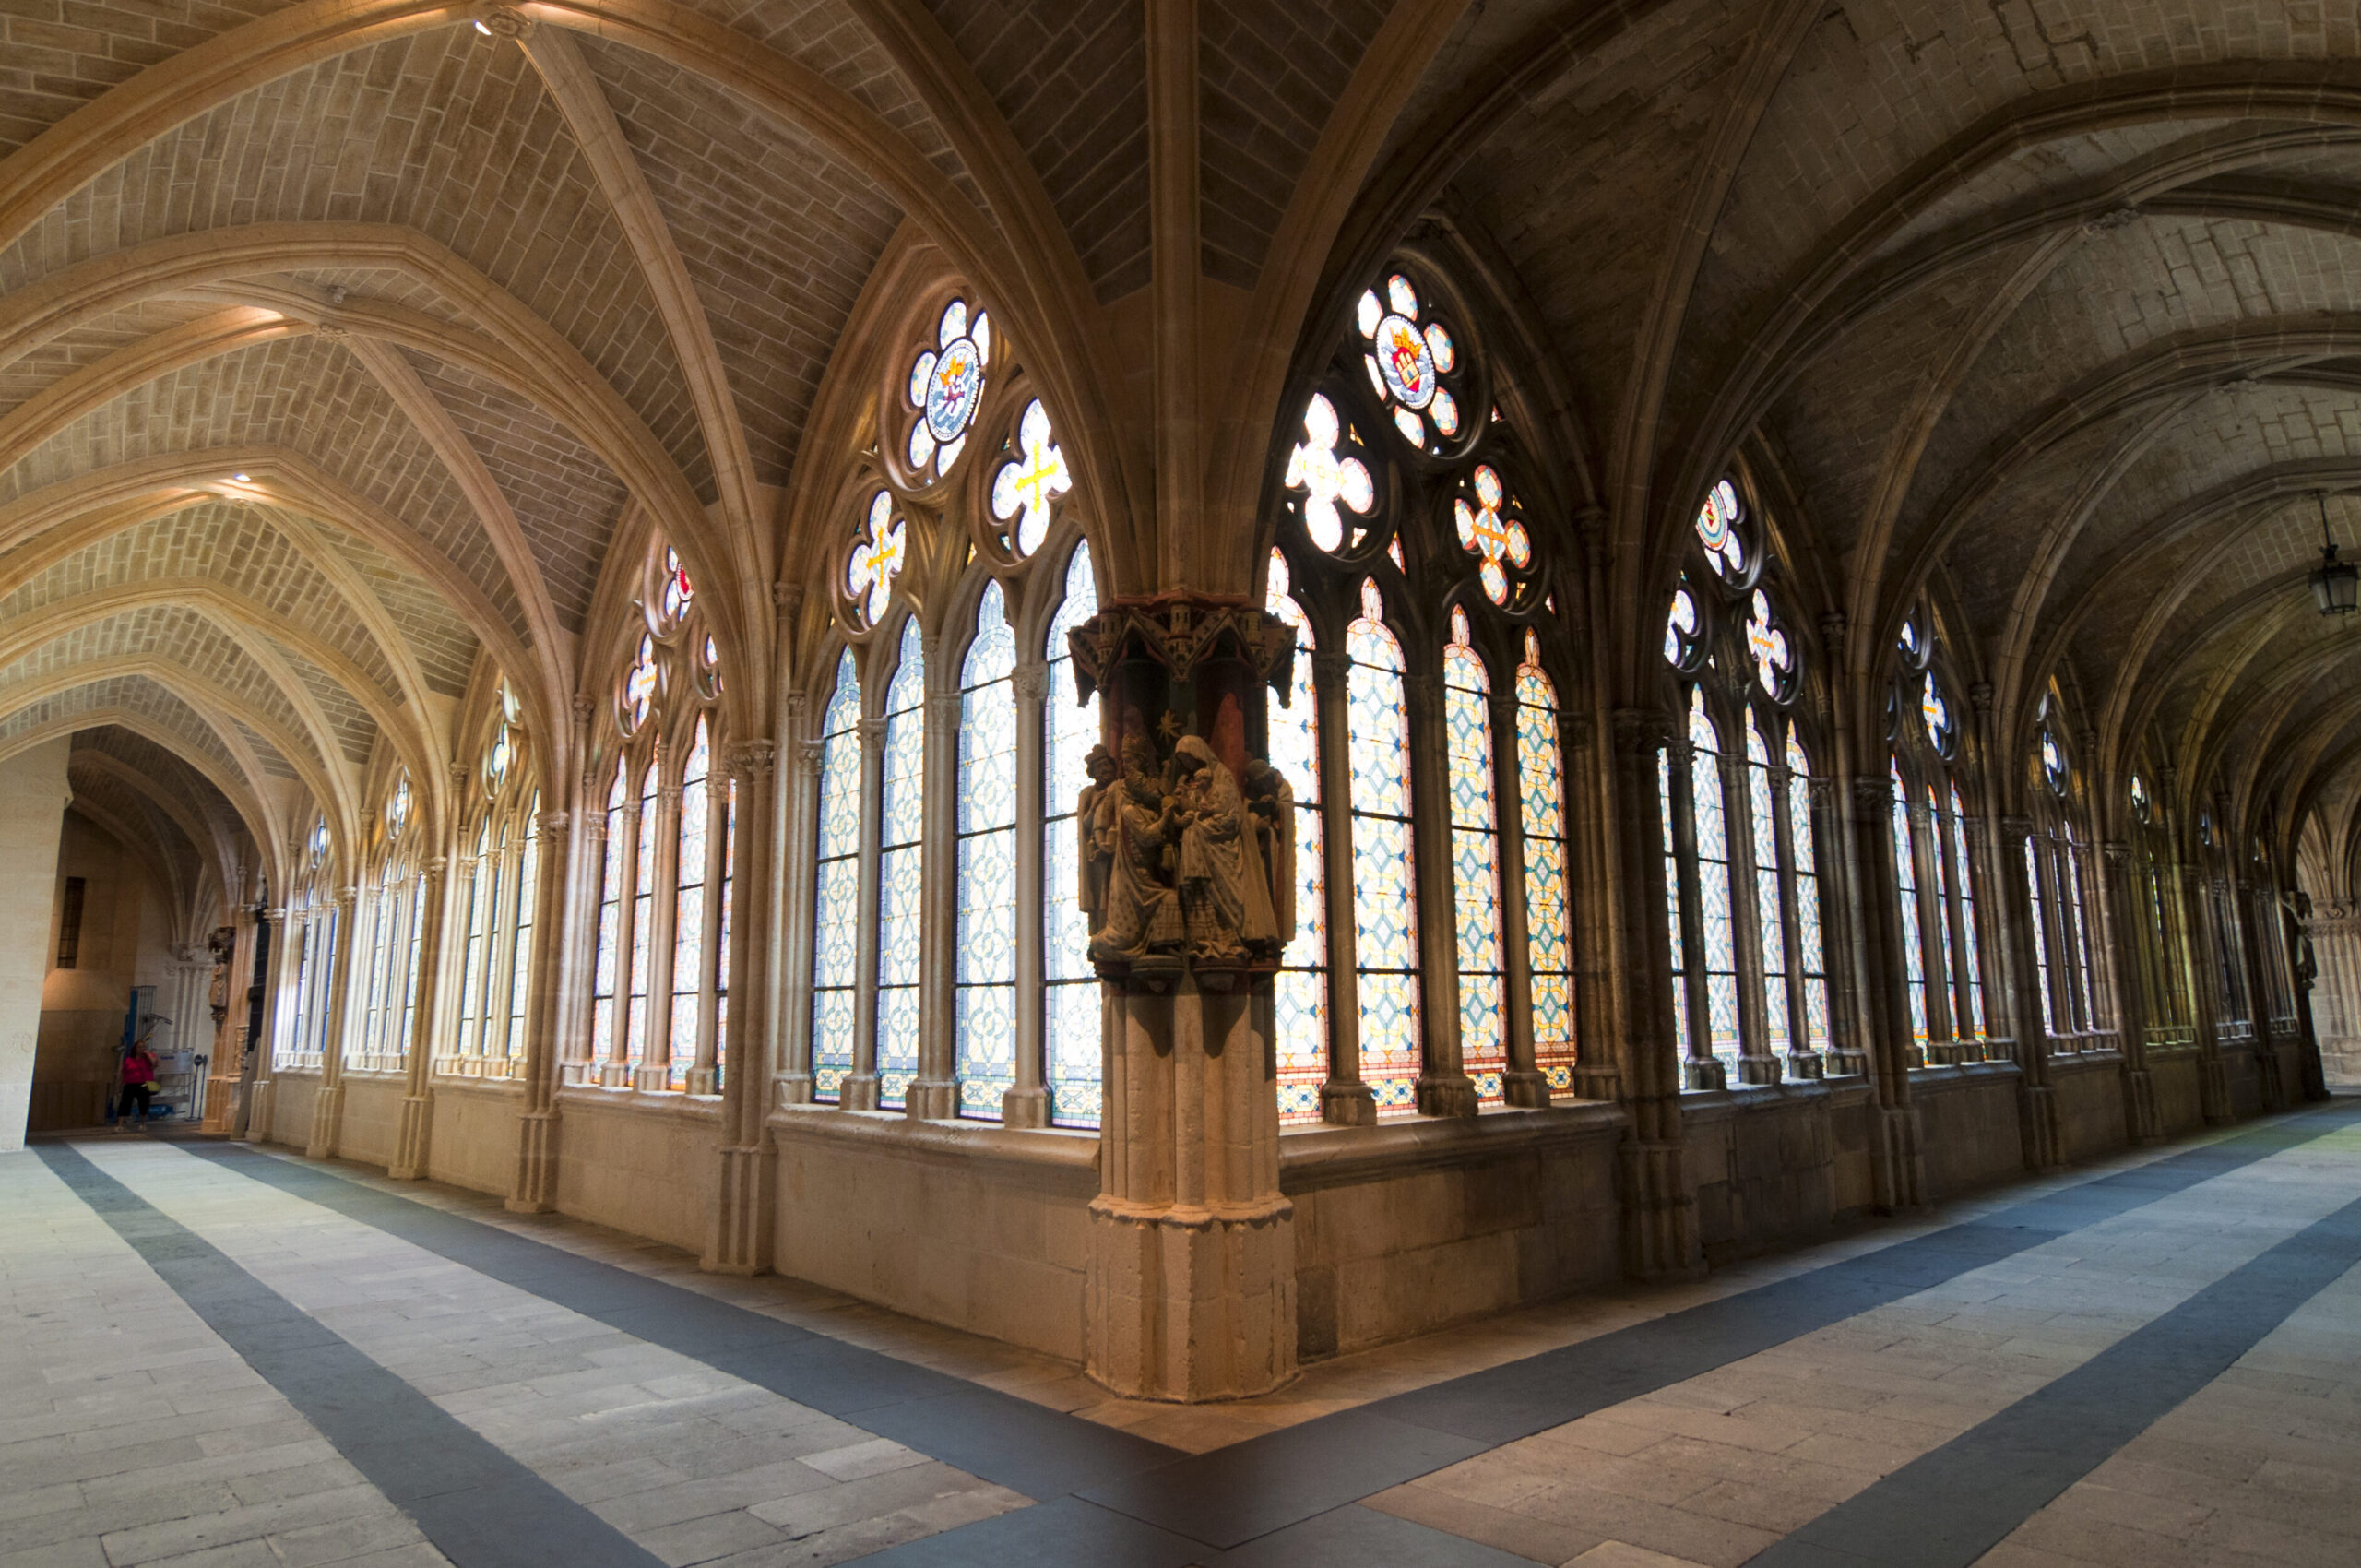 Características generales del arte gótico: un estilo arquitectónico y artístico medieval.